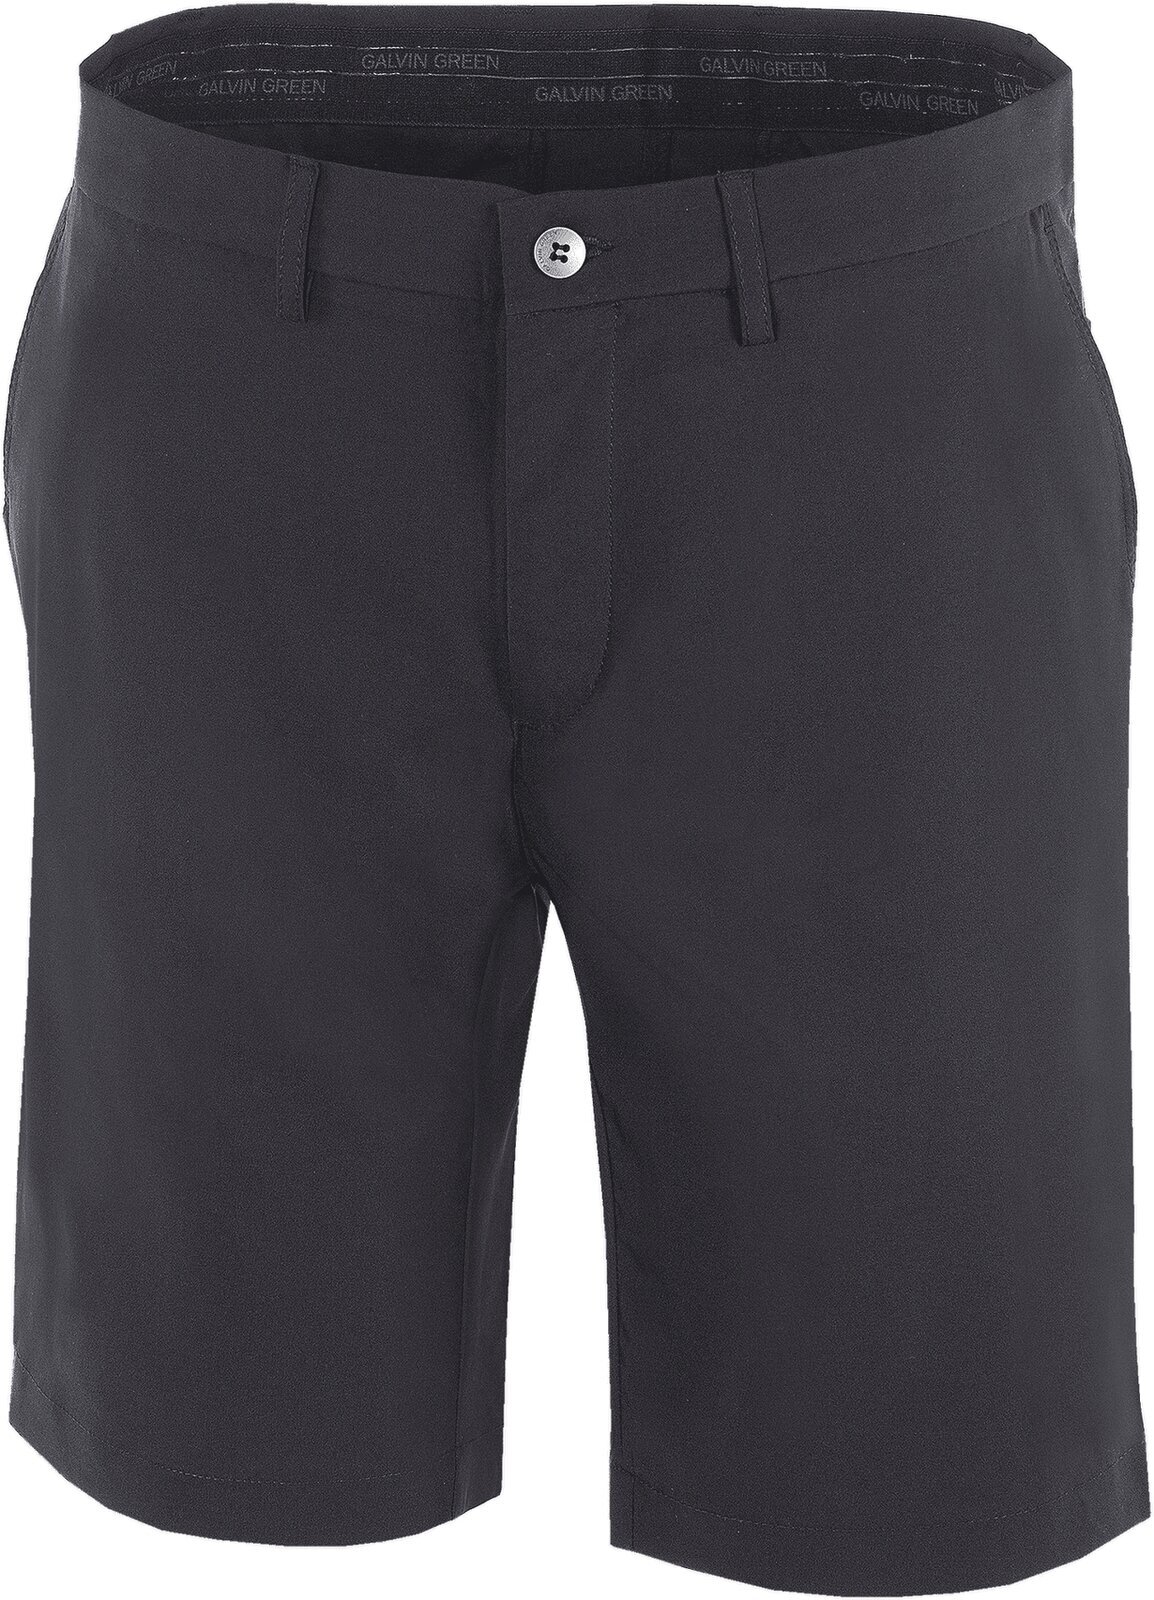 Pantalones cortos Galvin Green Paul Mens Breathable Shorts Black 32